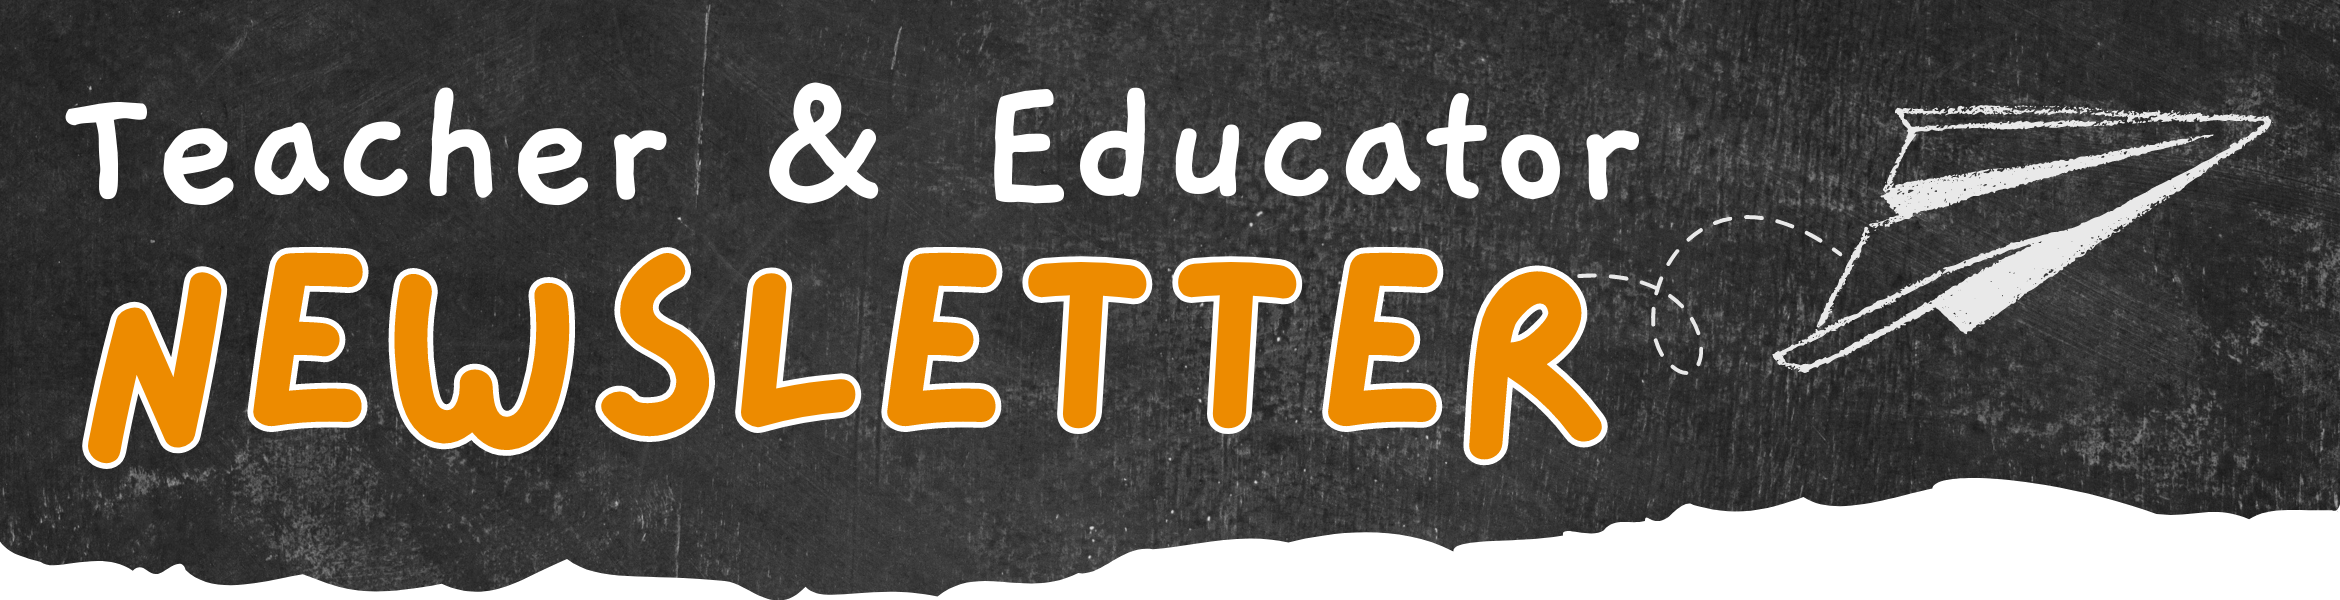 Teacher & Educator Newsletter Sign up